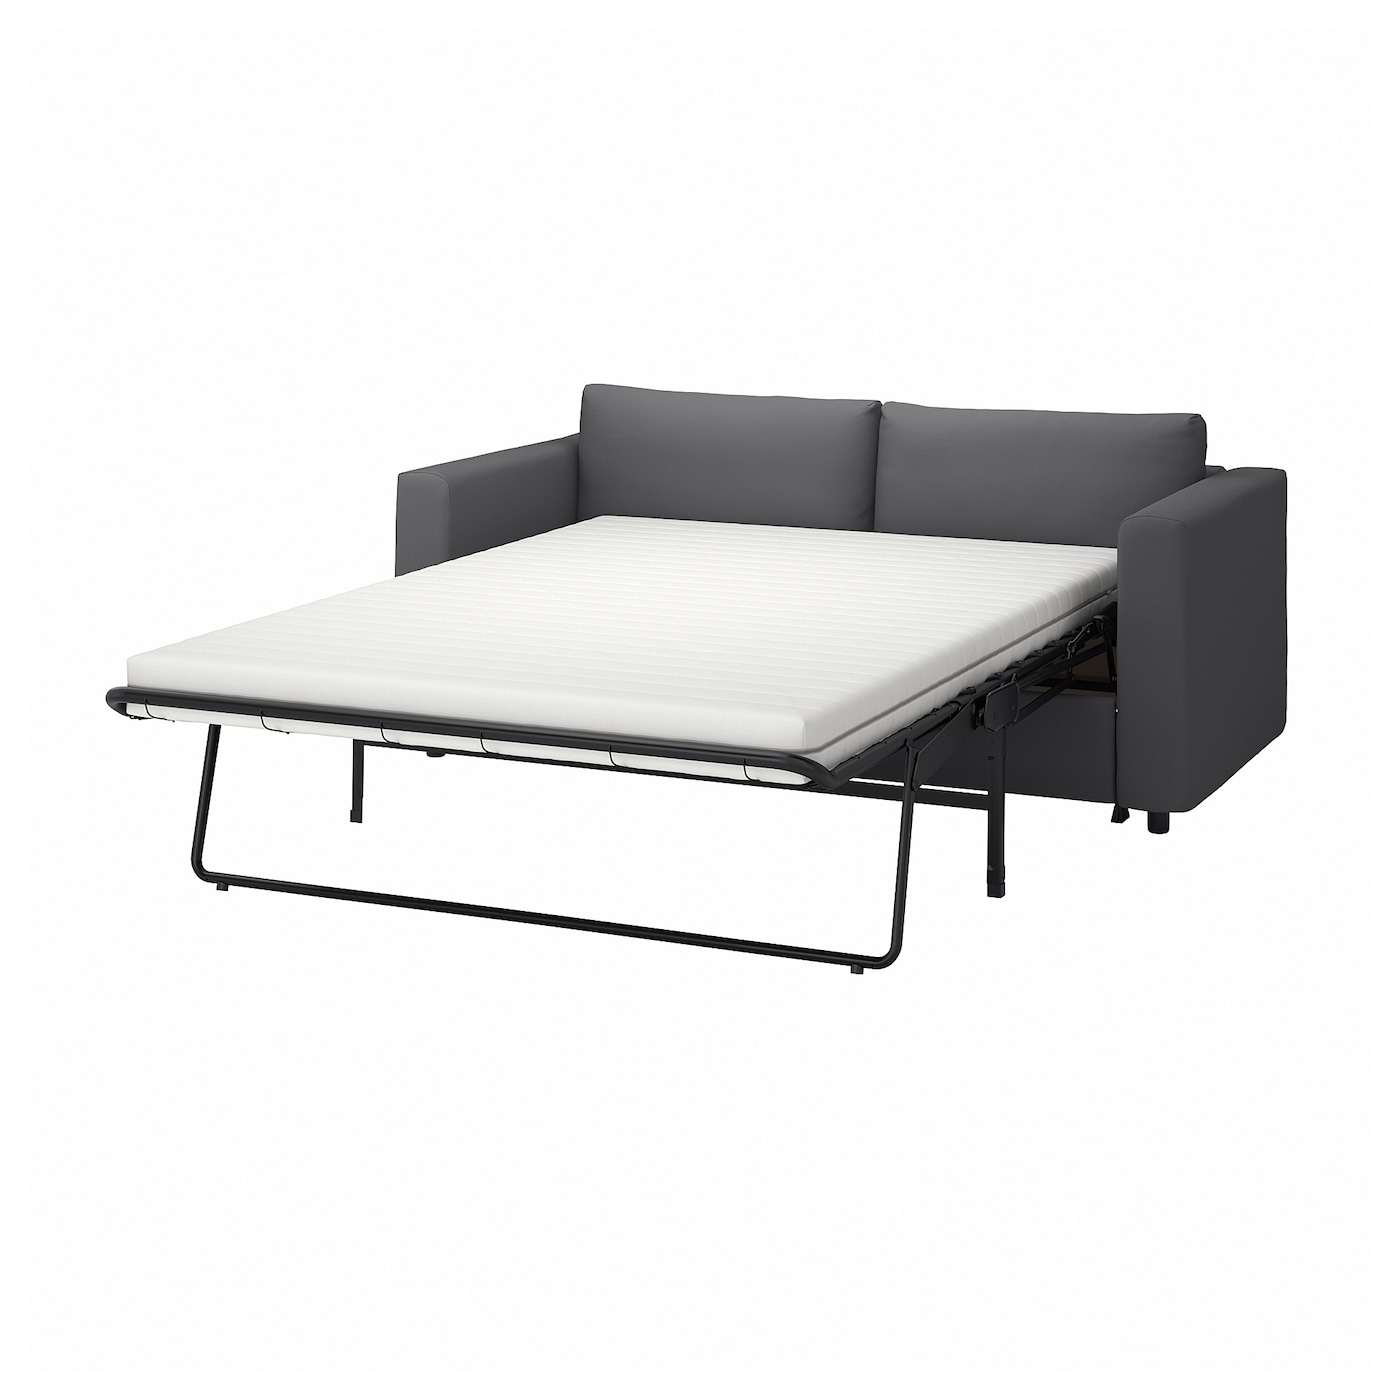 2-местный диван - IKEA VIMLE, 98x190см, темно-серый, ВИМЛЕ ИКЕА